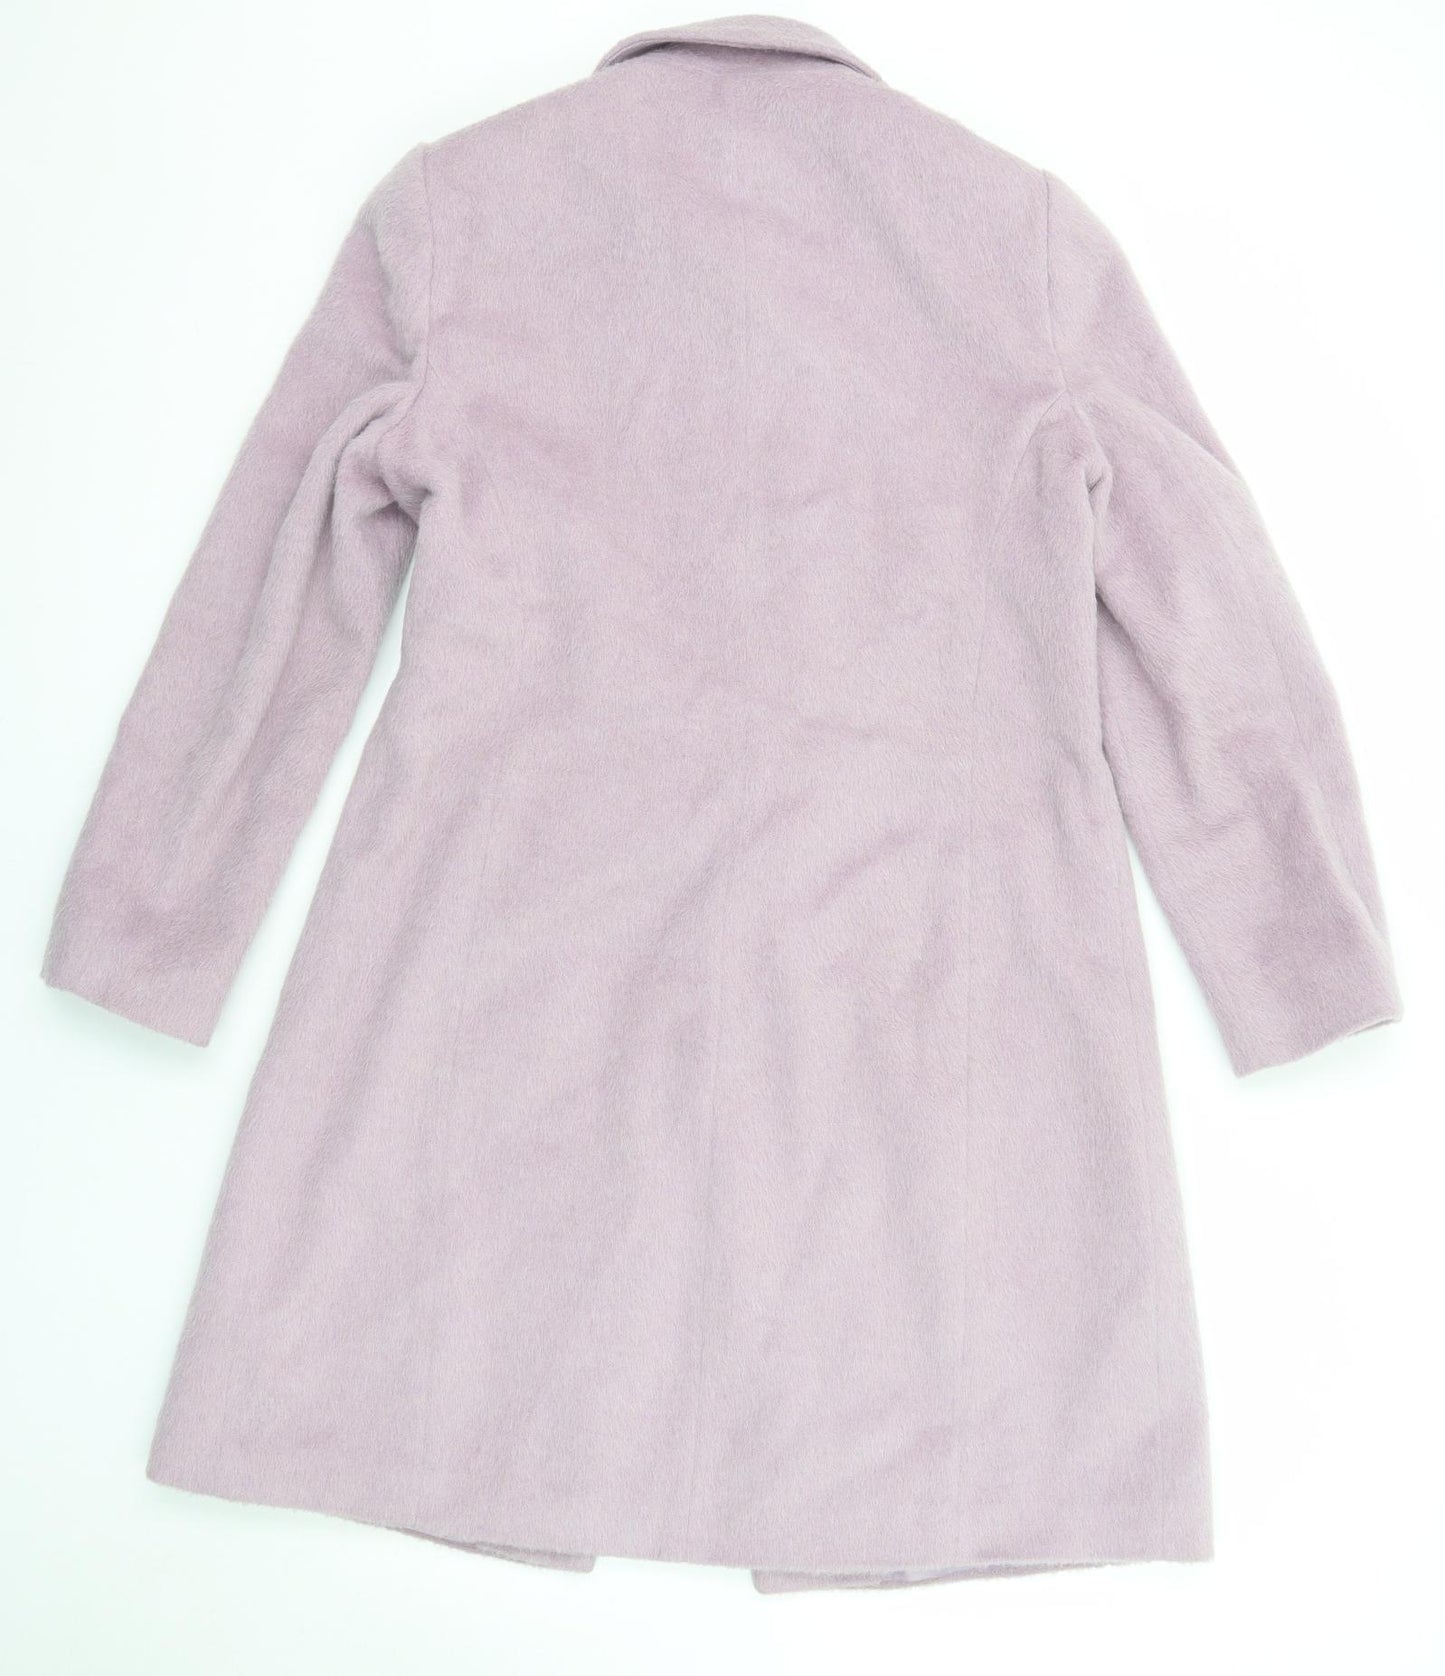 BHS Womens Purple Pea Coat Coat Size 14 Button - Faux Fur